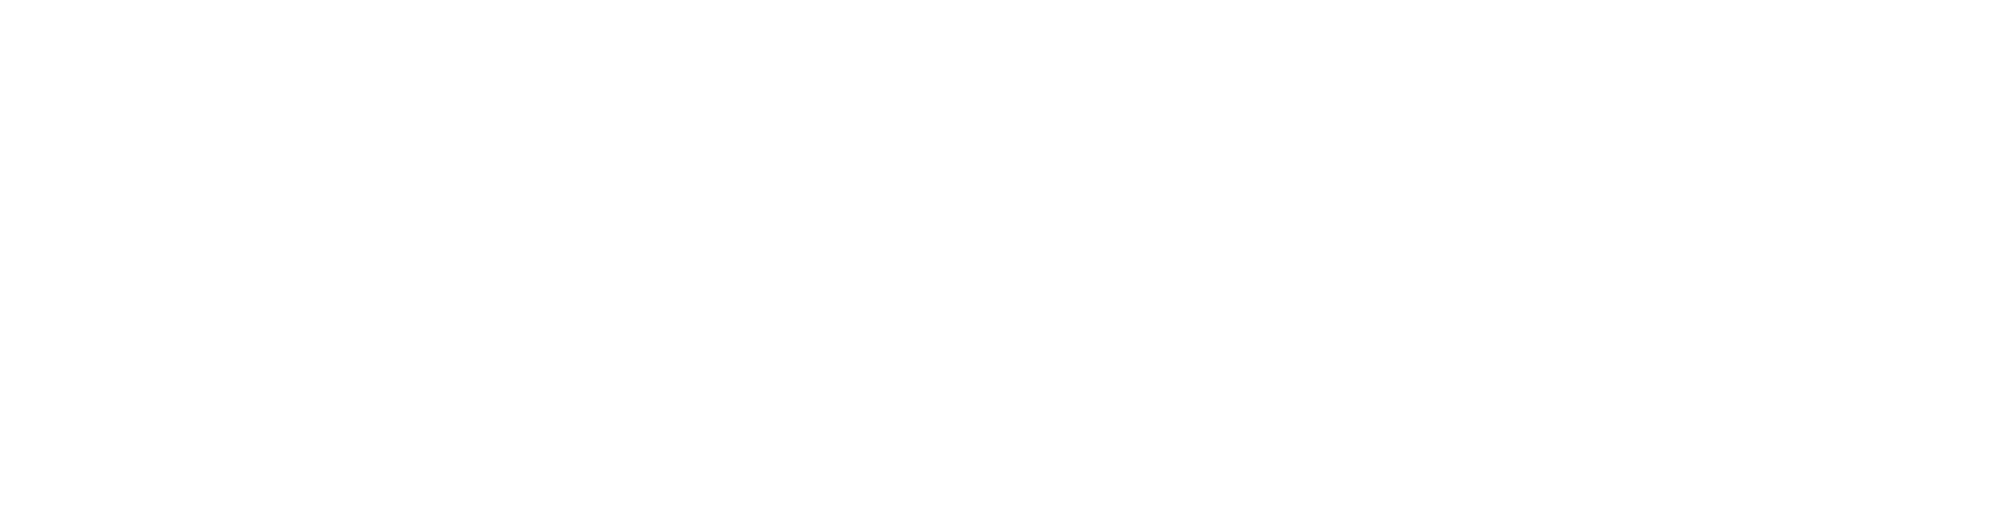 IT Founder Logo - Weiß